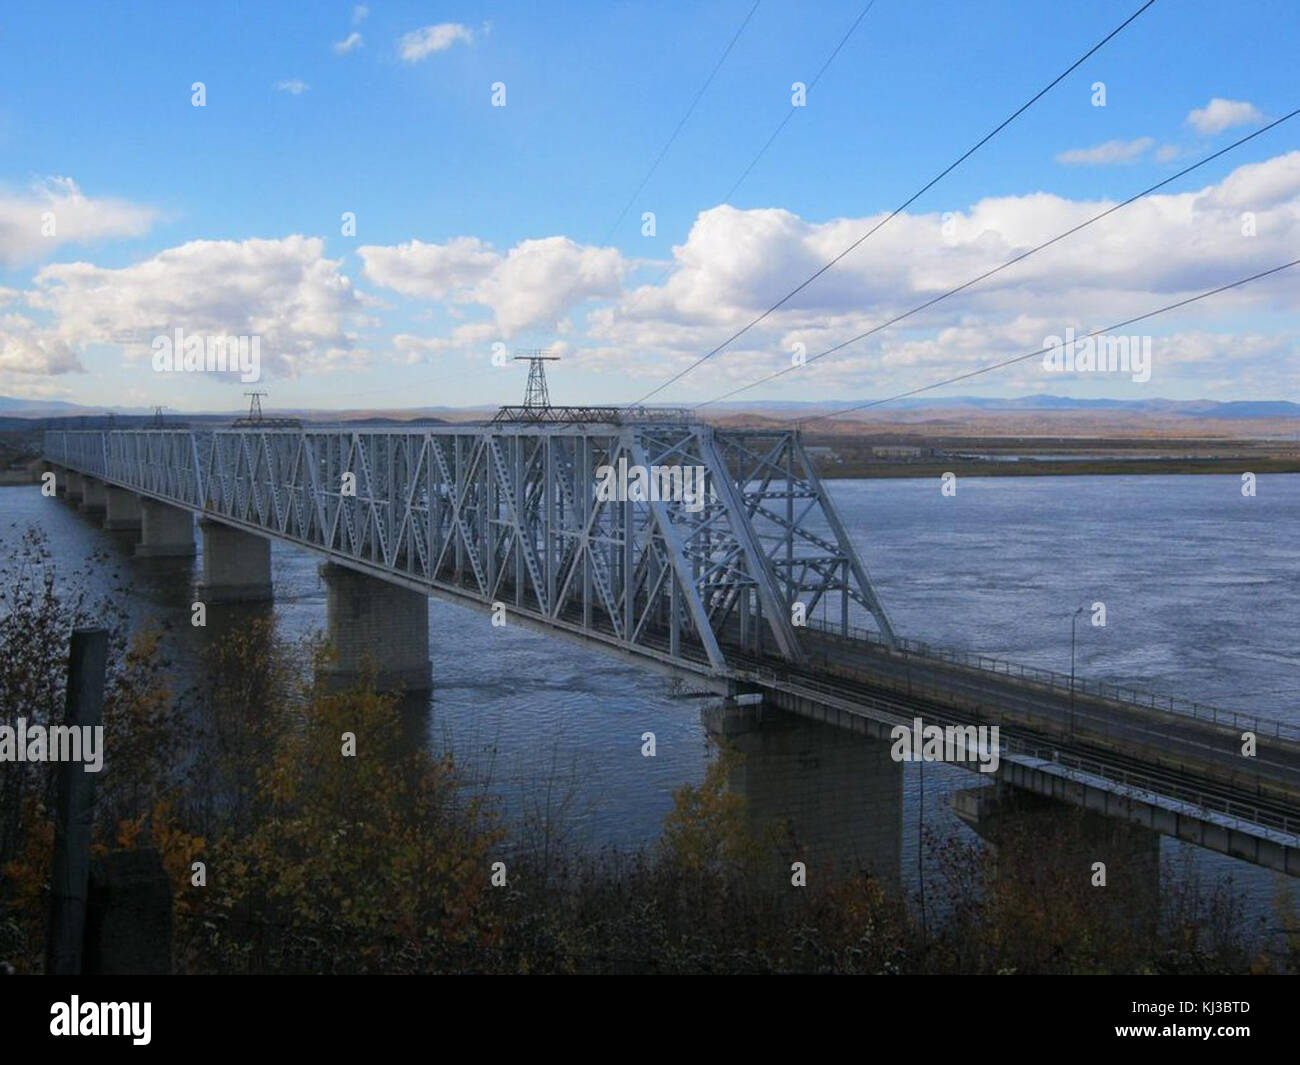 The bridge across the Amur River (in Komsomolsk-on-Amur) Stock Photo